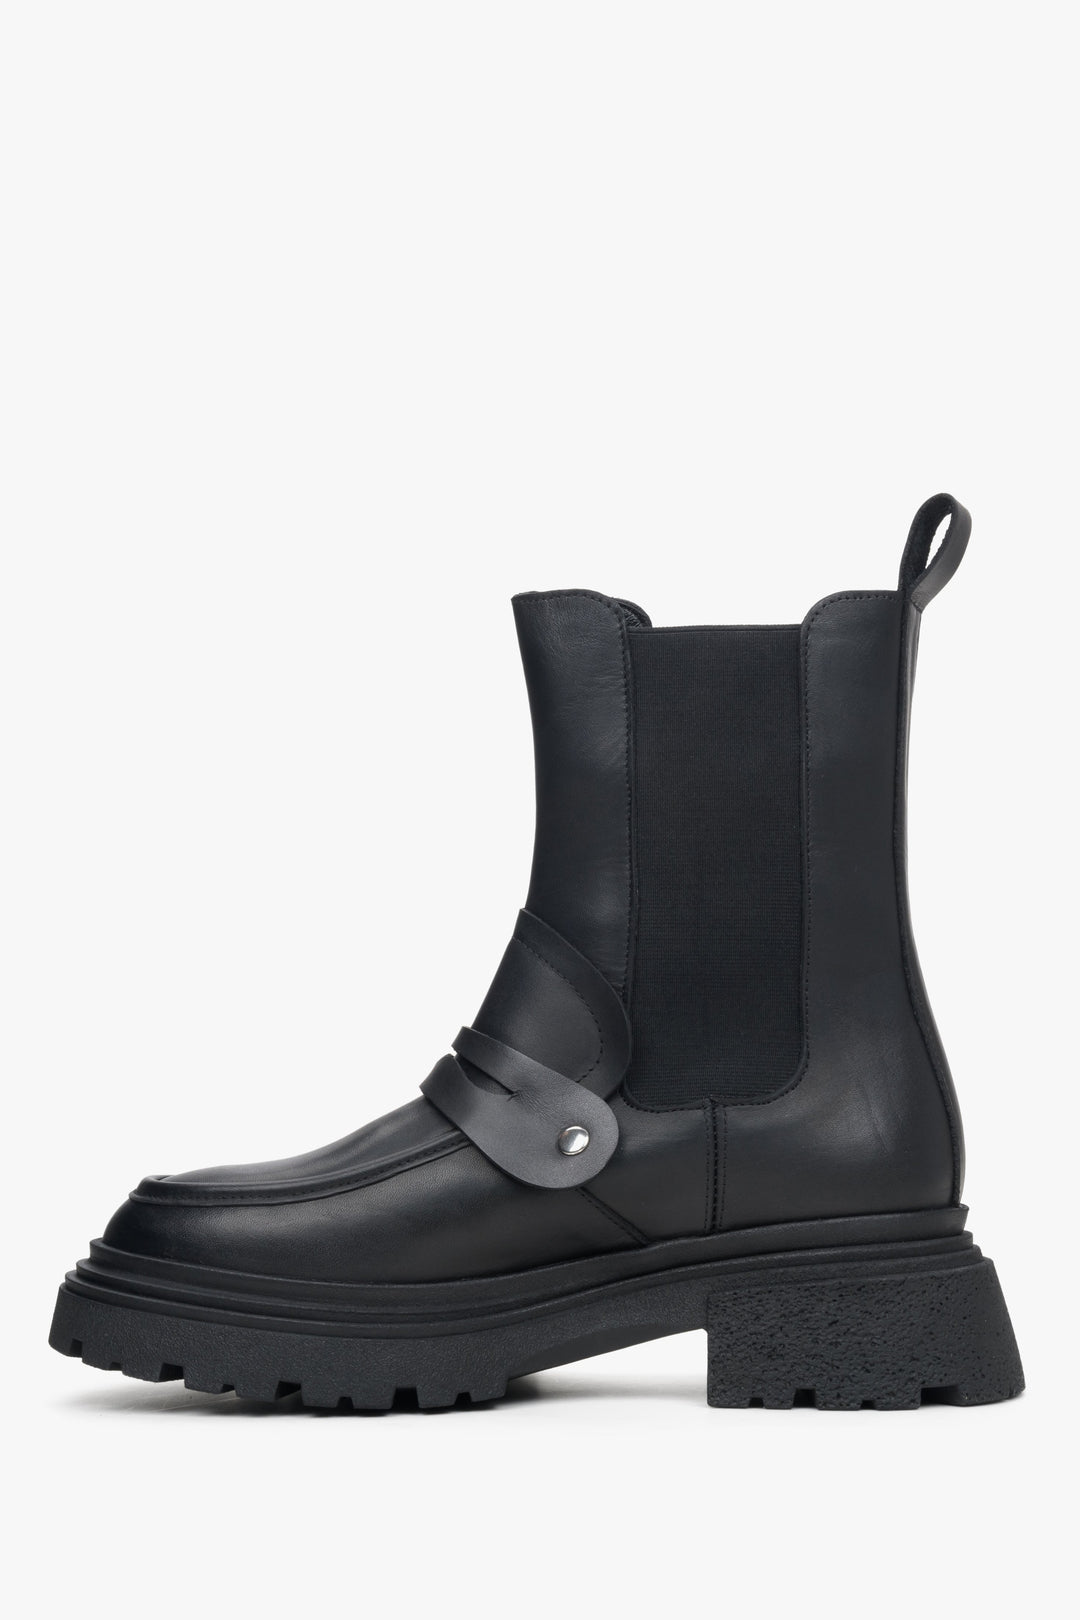 Women's black leather Chelsea boots by Estro - shoe profile.